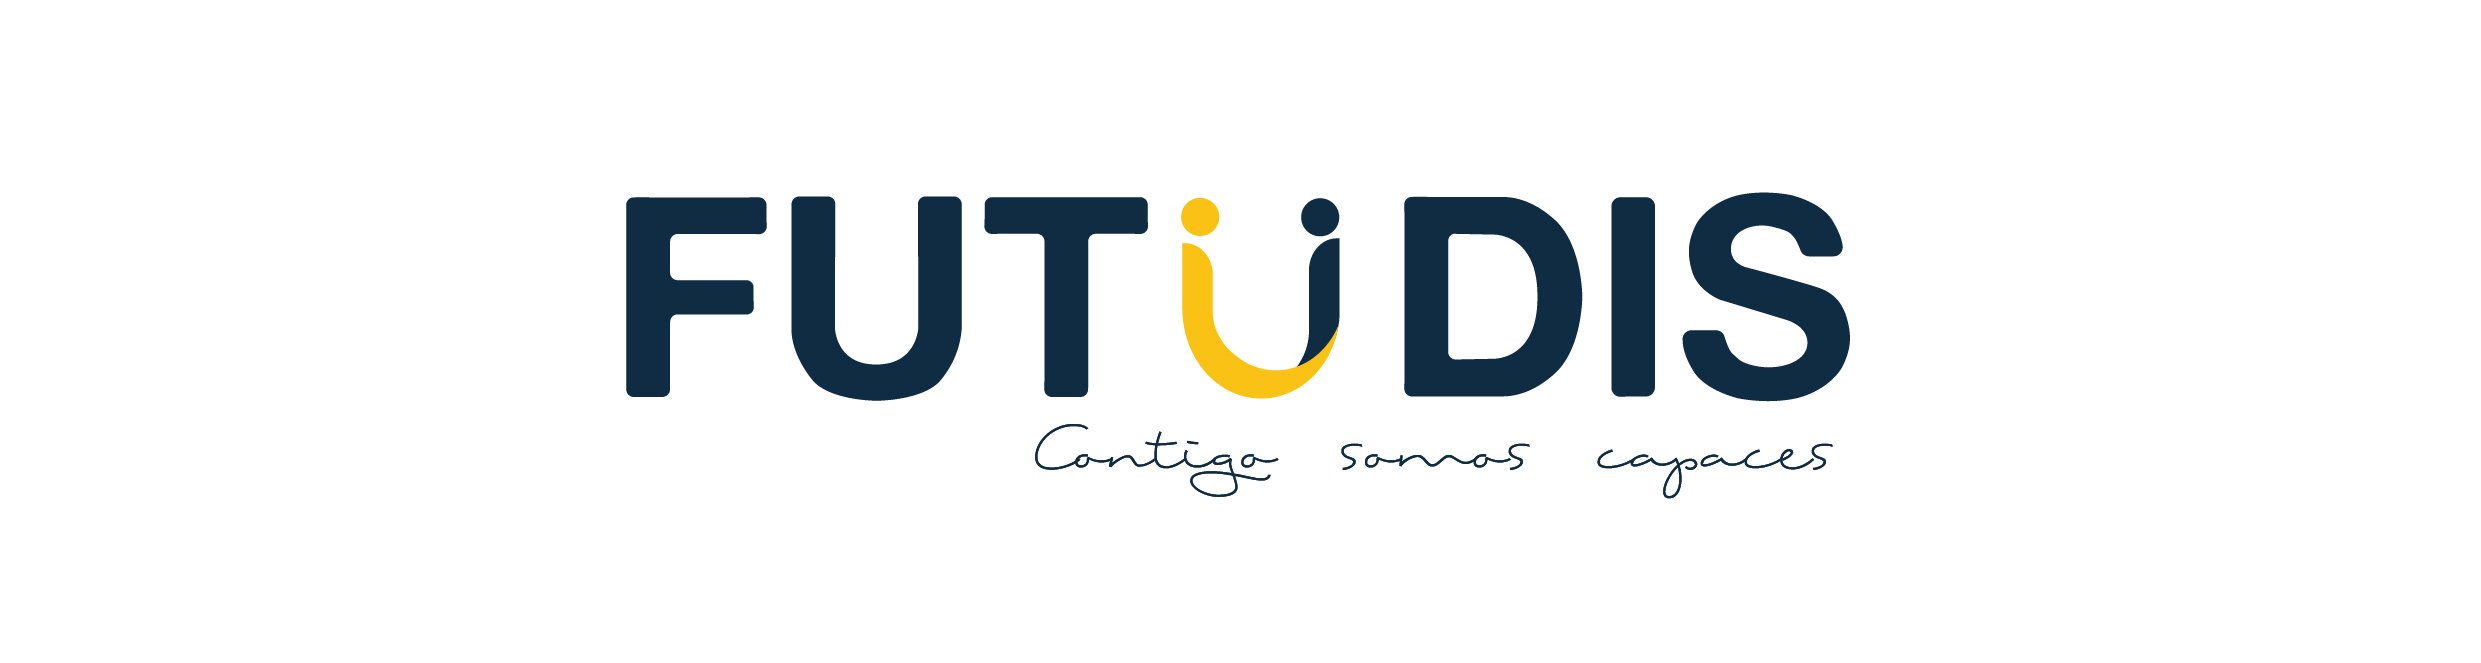 FUTUDIS logo